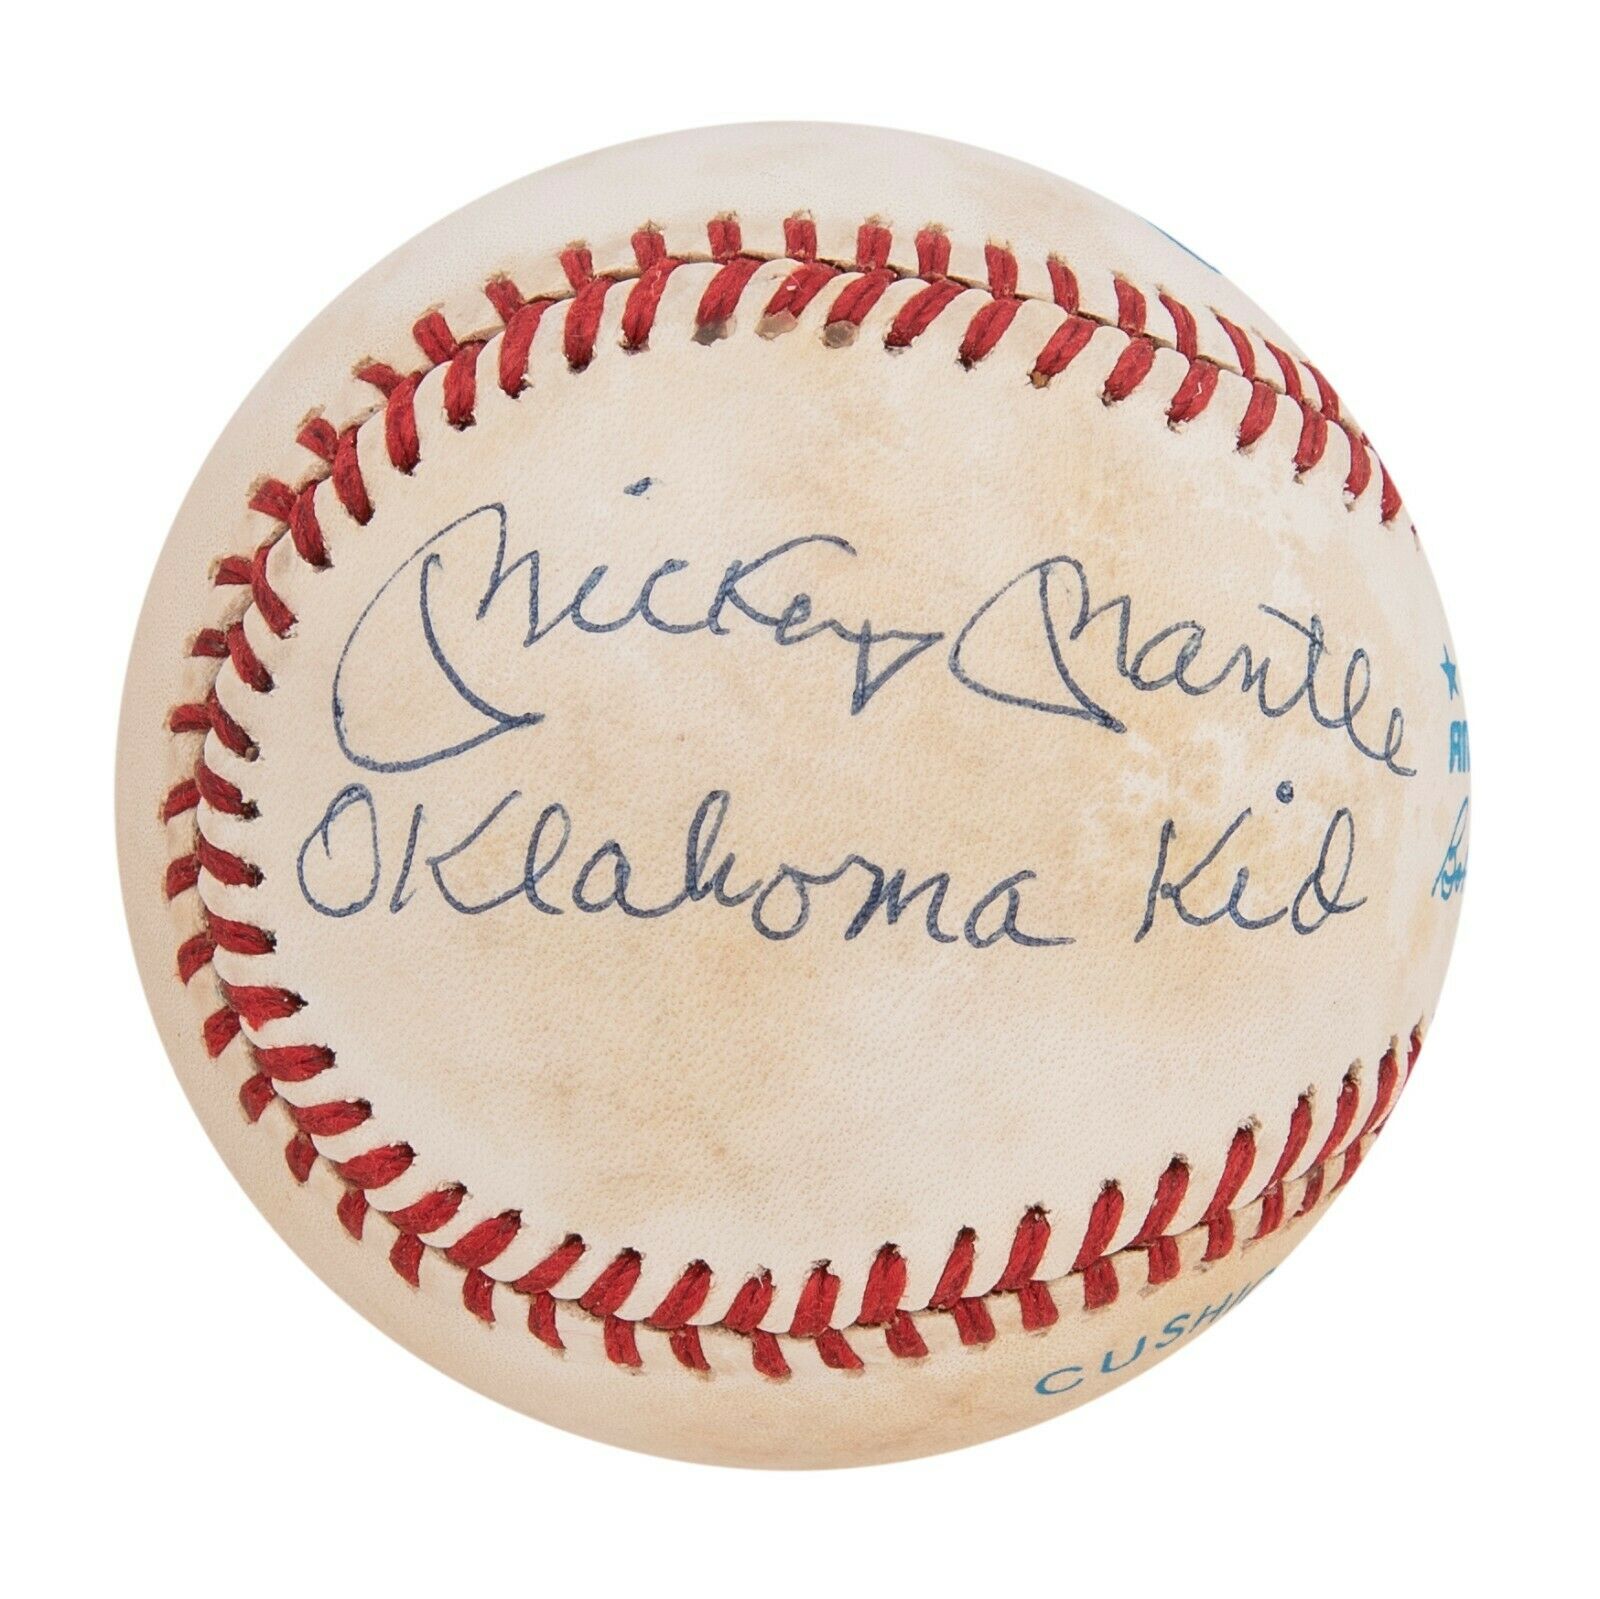 Mickey Mantle "Oklahoma Kid" Single Signed Inscribed Baseball With JSA COA